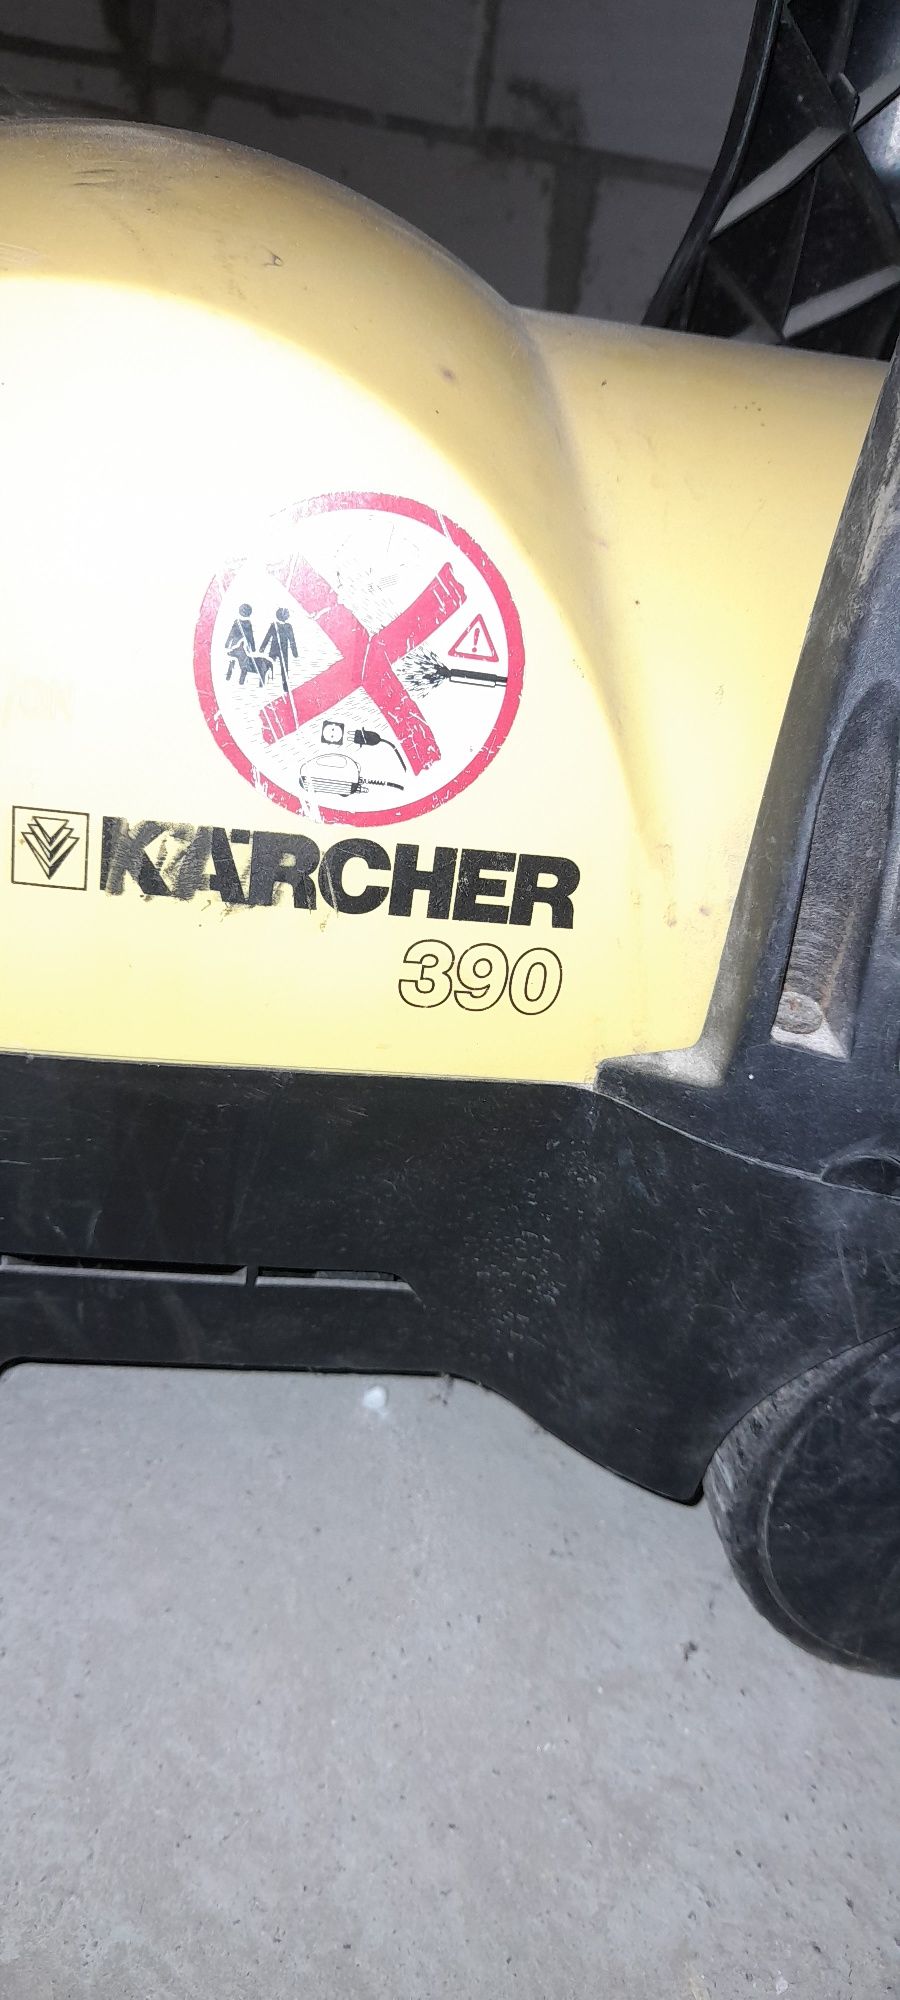 Vând sau schimb Karcher 390 fără furtun și pistol